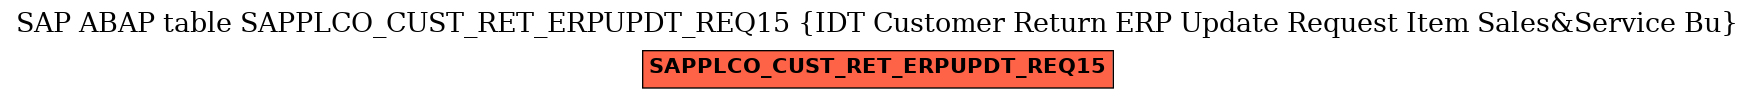 E-R Diagram for table SAPPLCO_CUST_RET_ERPUPDT_REQ15 (IDT Customer Return ERP Update Request Item Sales&Service Bu)